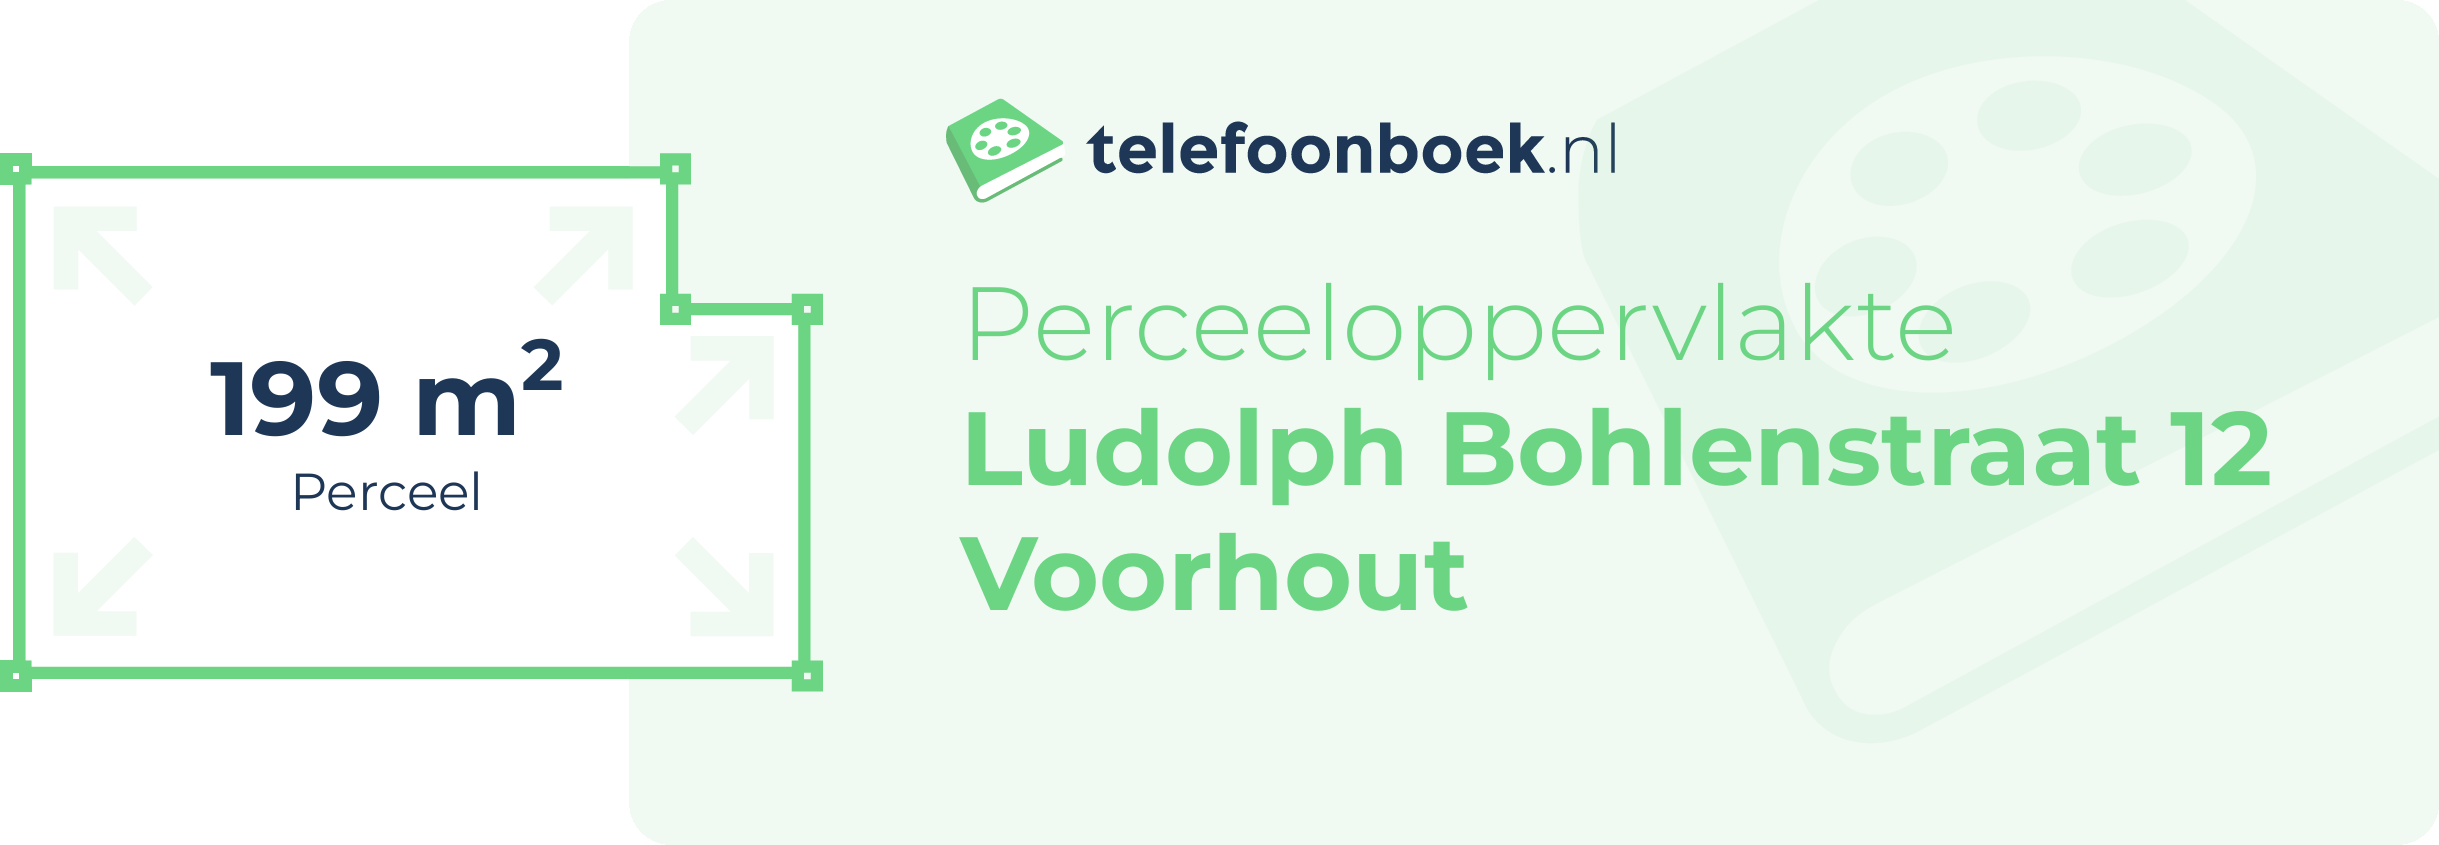 Perceeloppervlakte Ludolph Bohlenstraat 12 Voorhout